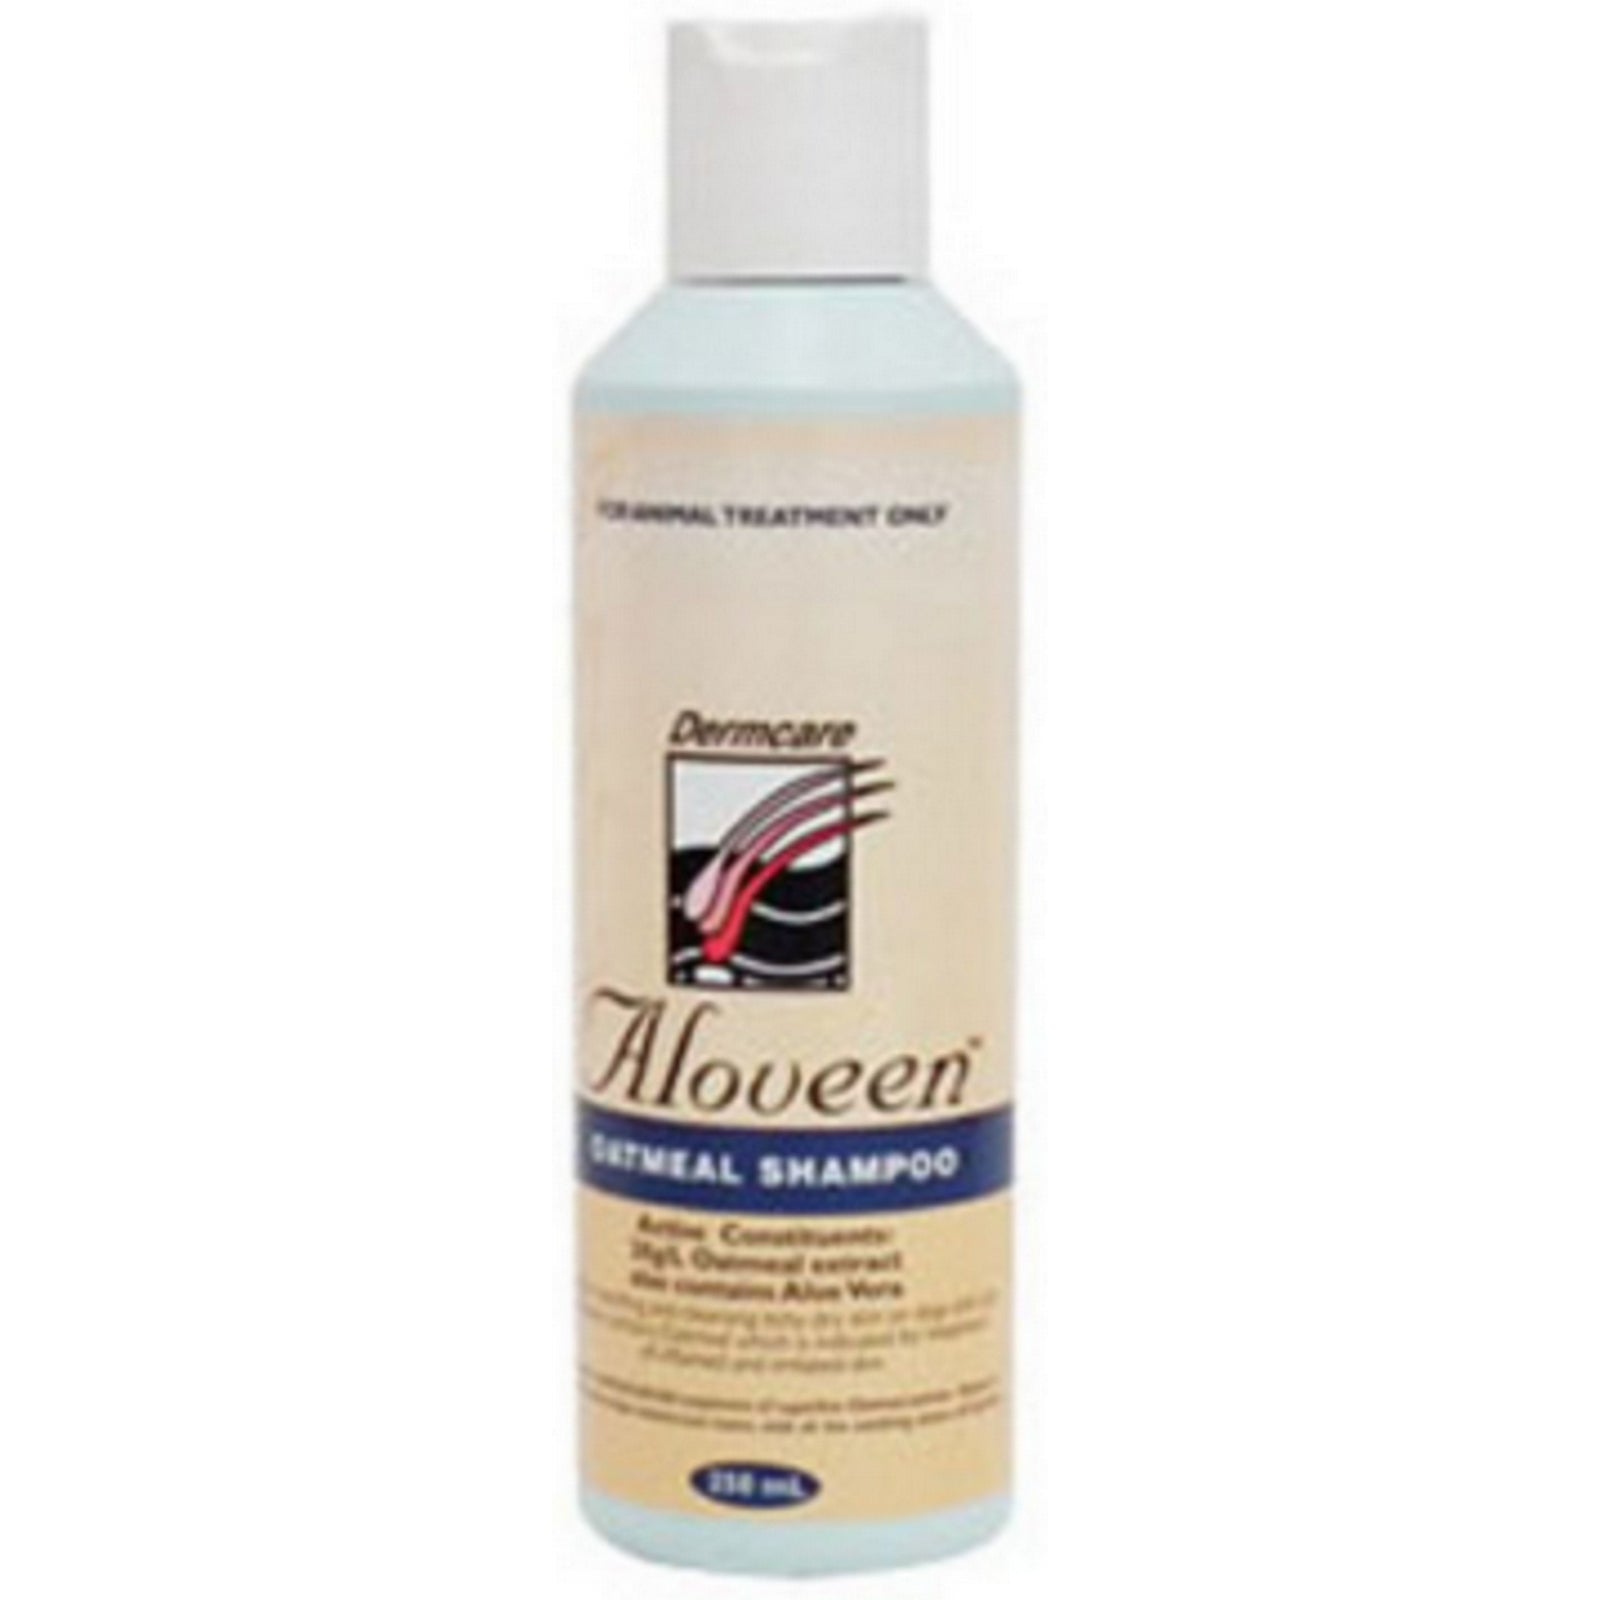 Dermcare Aloveen Shampoo Oatmeal